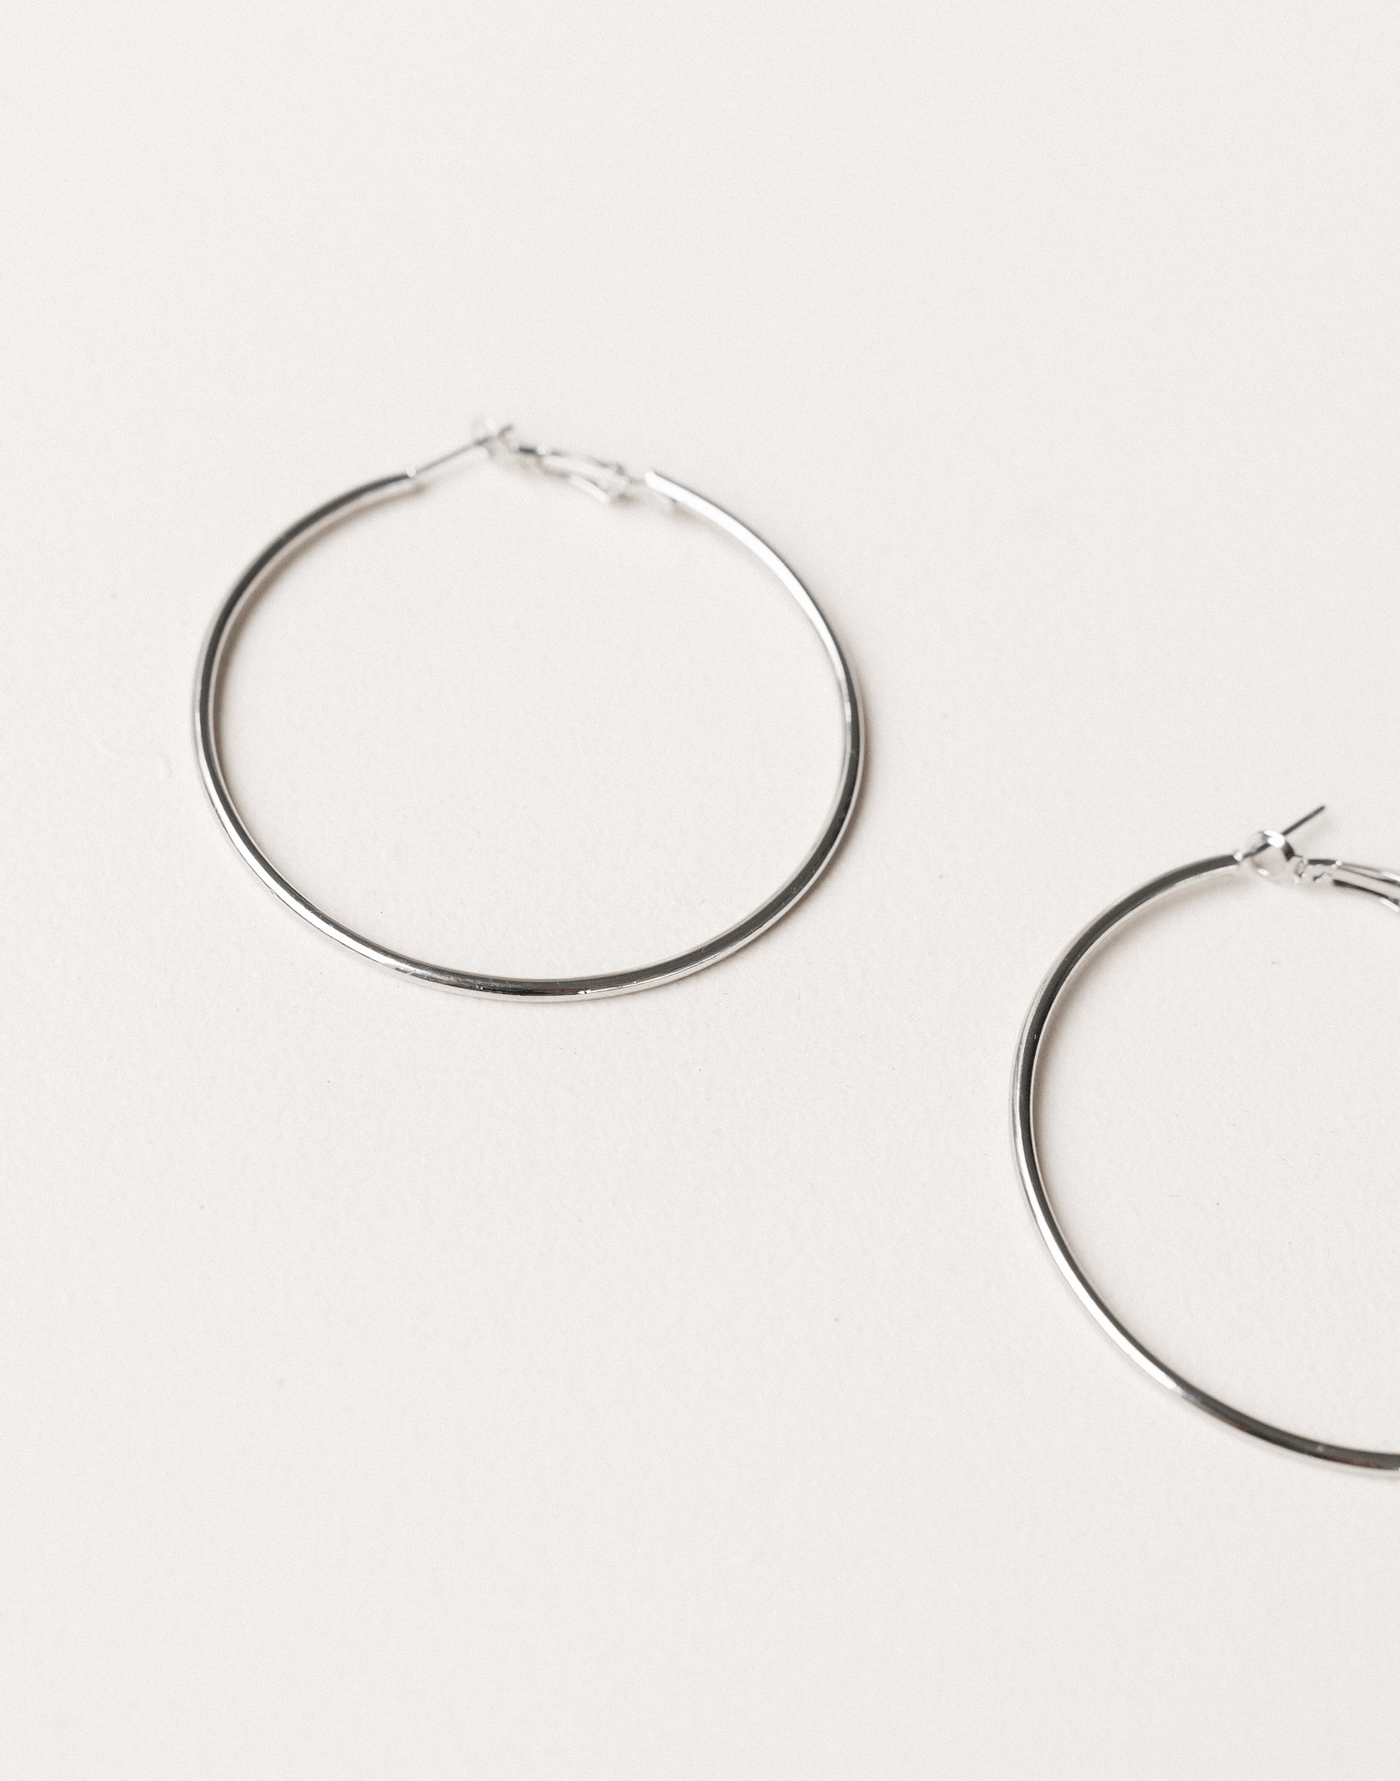 That Feeling Earrings (Silver) - Silver Hoop Earrings - Women's Accessories - Charcoal Clothing